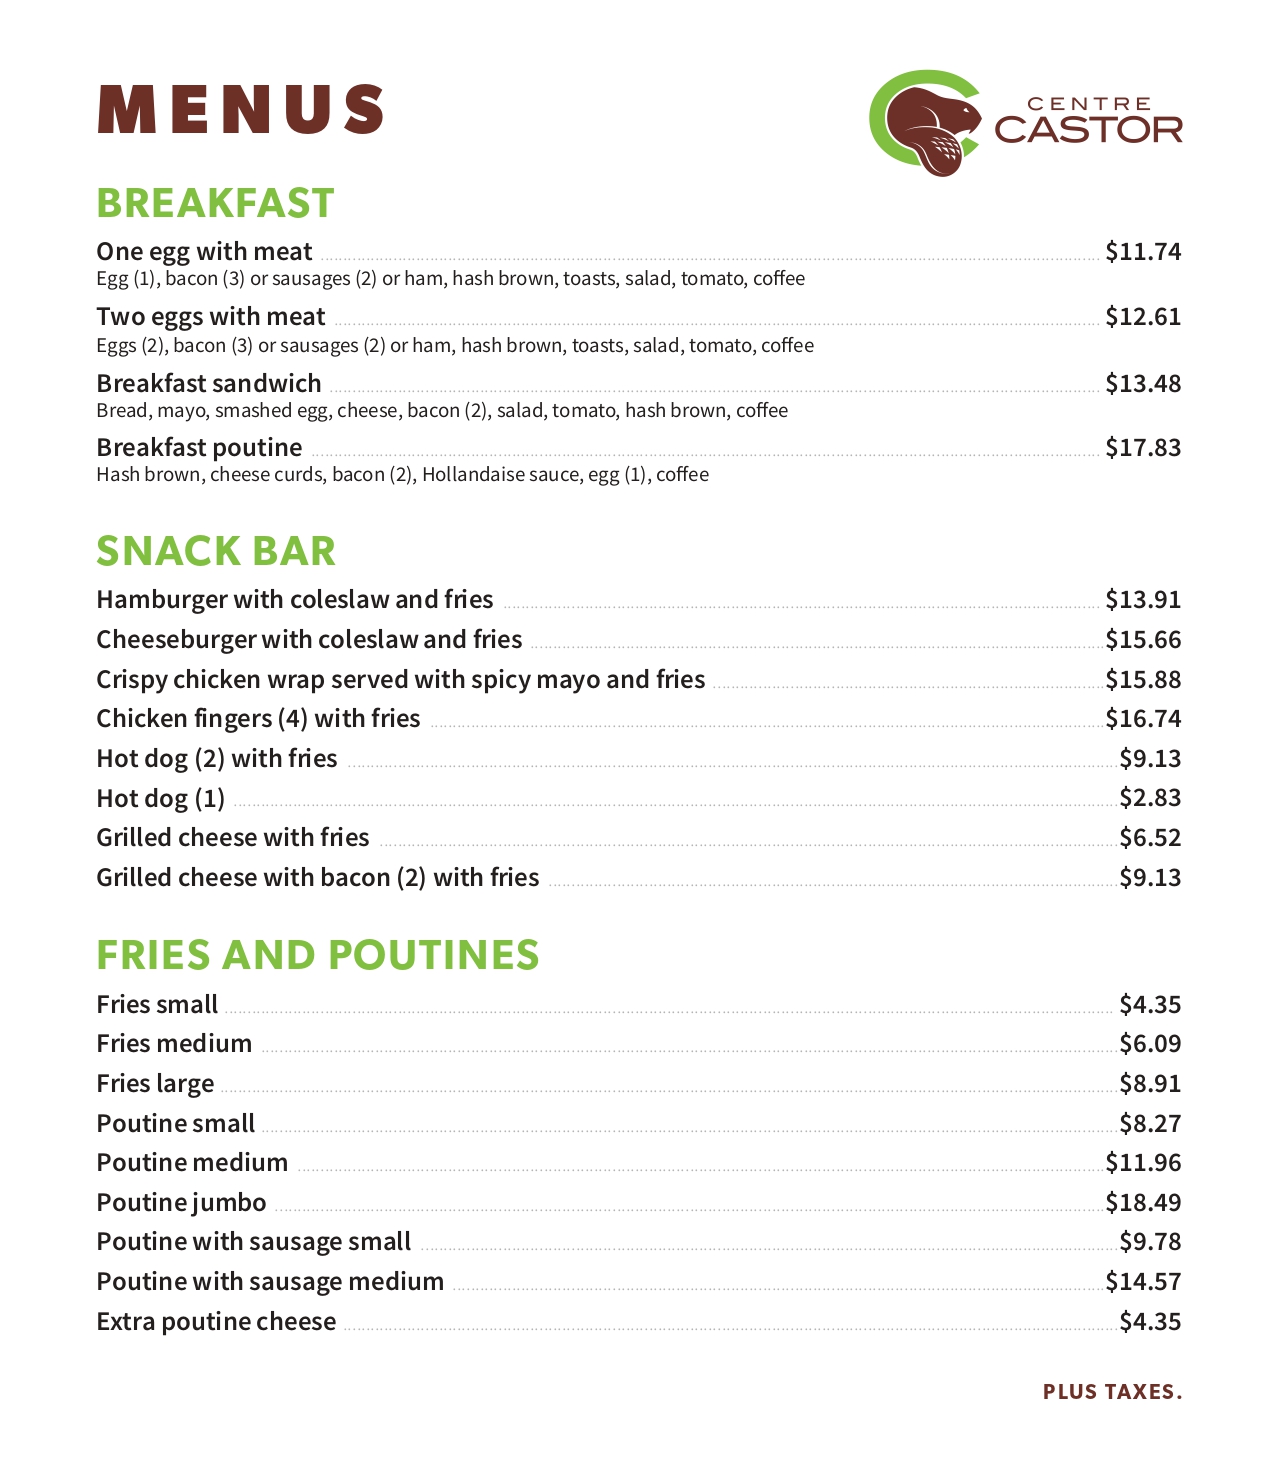 Centre Castor Restaurant menu